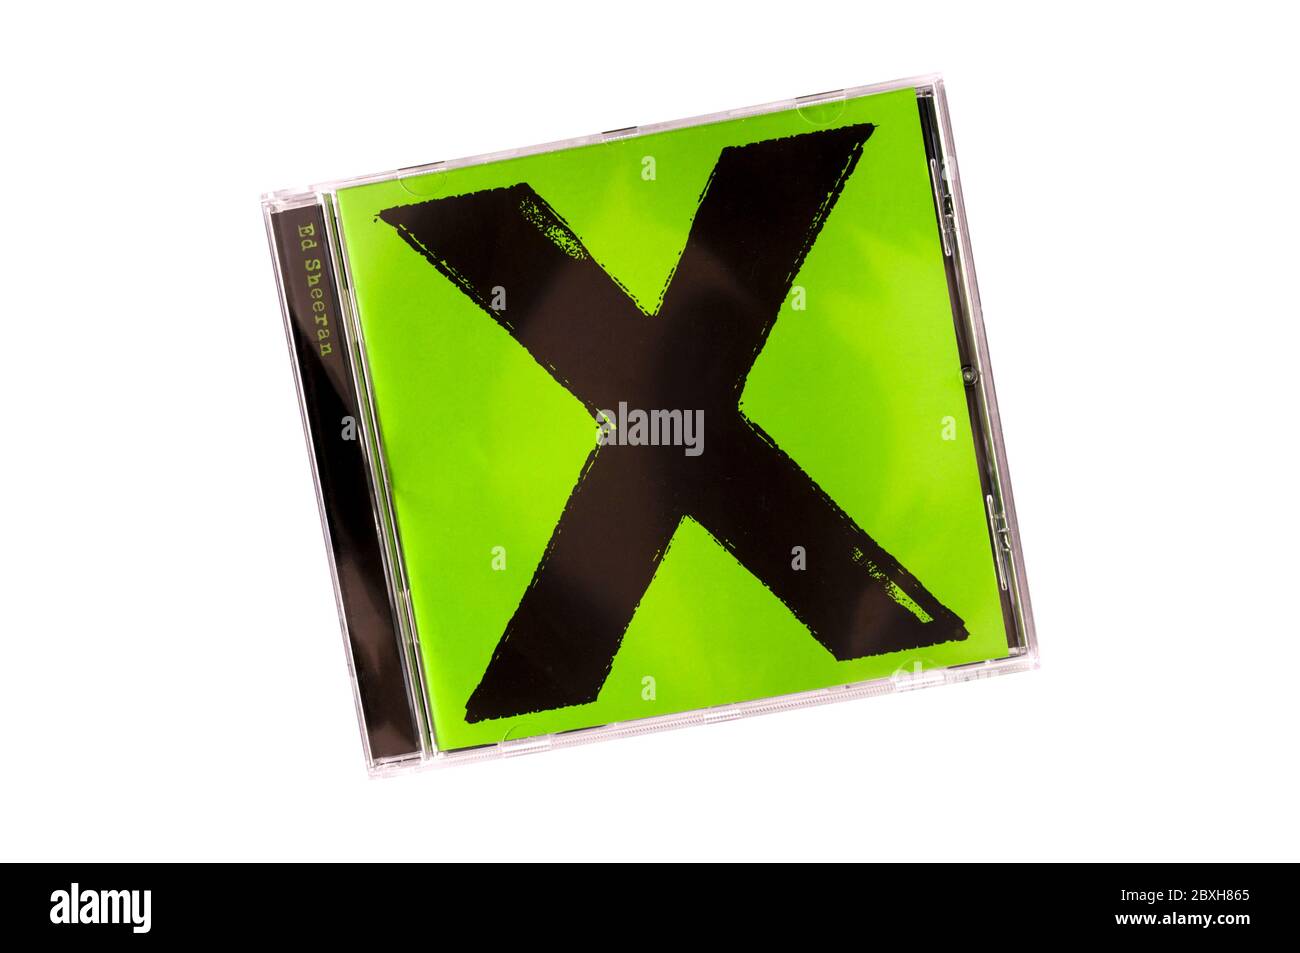 X, pronunciado Multiply, de Ed Sheeran, fue su segundo álbum de estudio. Fue lanzado en 2014. Foto de stock